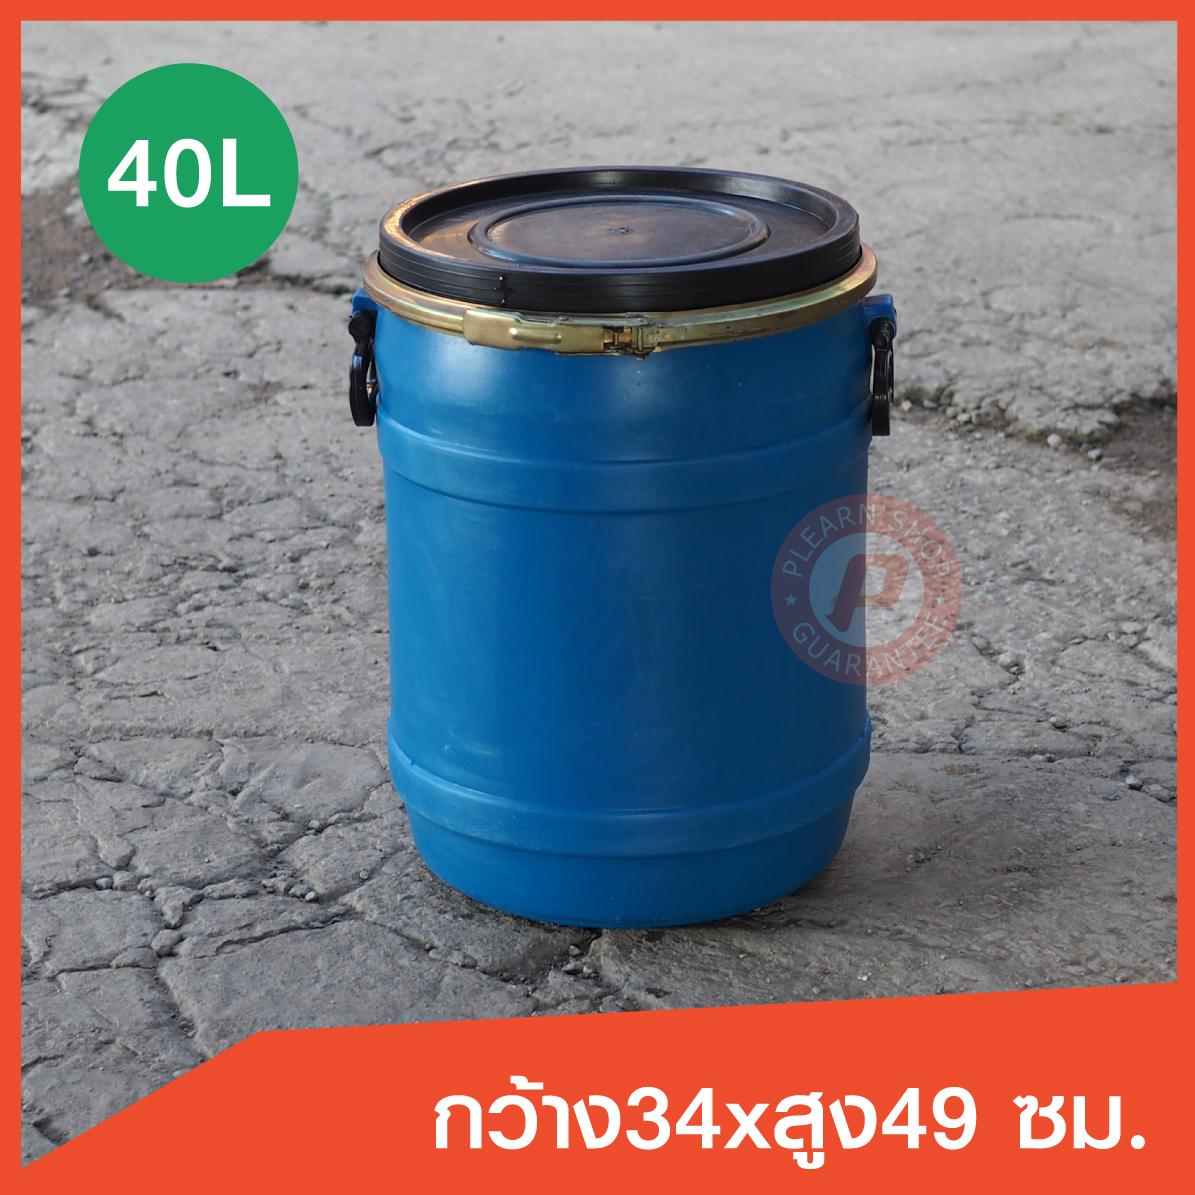 ถังพลาสติกมือสอง ขนาด 40 ลิตร (2nd plastic barrel 40L) สีน้ำเงิน เกรดหนาใช้ใส่น้ำหมัก น้ำจุลิทรีย์ ทำบ่อกรอง หรือเก็บของได้ มีเข็มขัดล๊อค